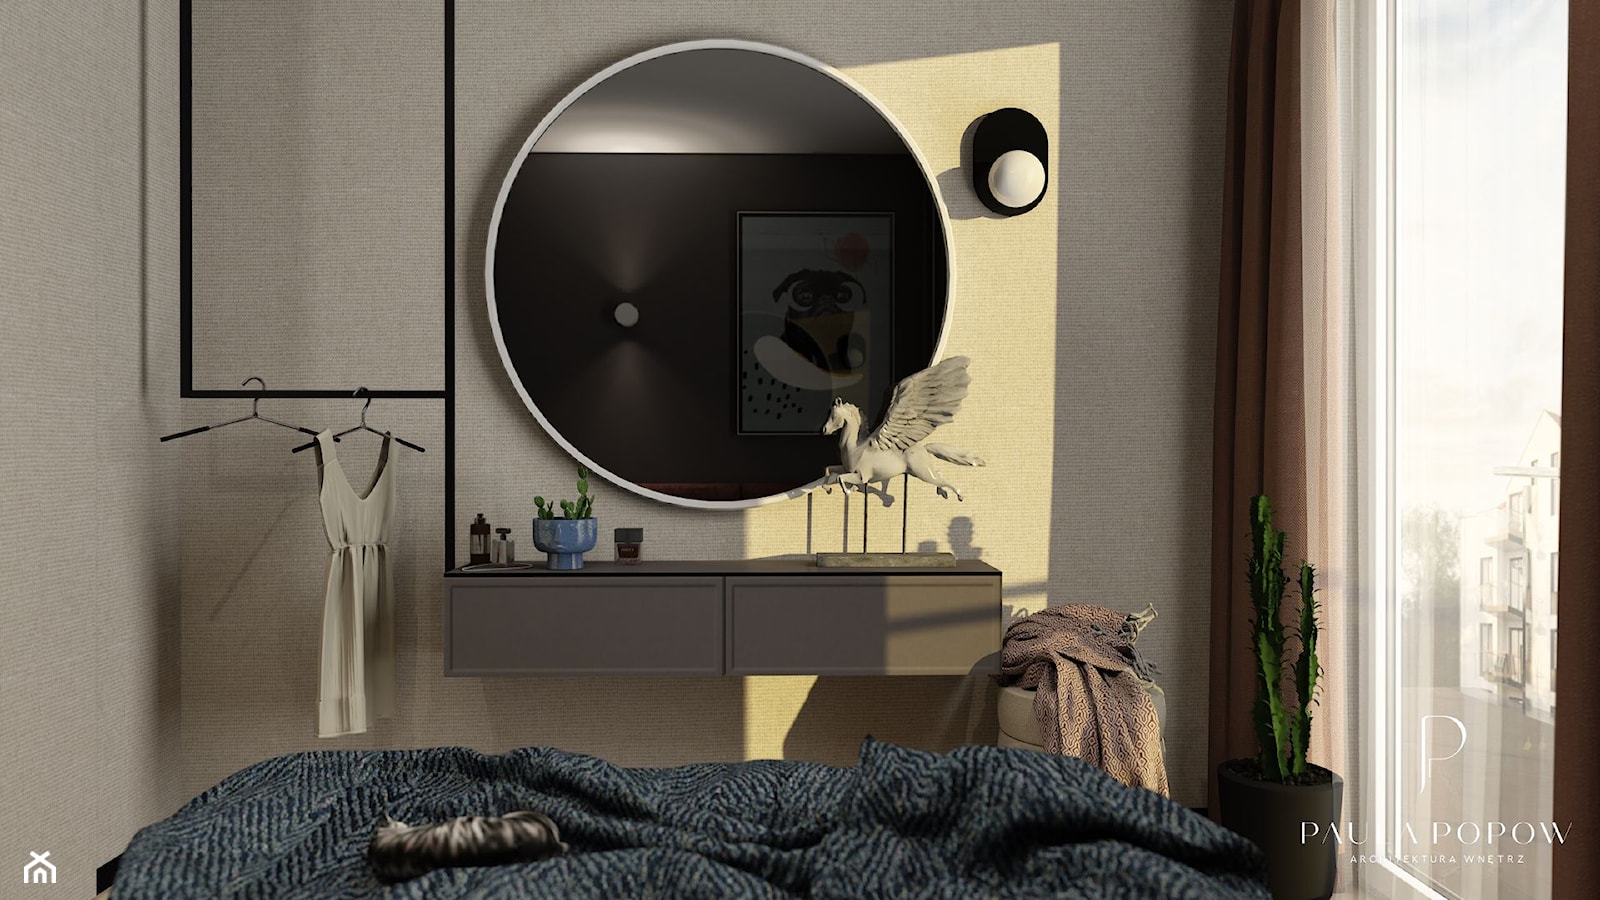 podwieszana komoda, okrągłe lustro, wieszak na ubrania, kinkiet - zdjęcie od Paula Popow projektowanie wnętrz - Homebook